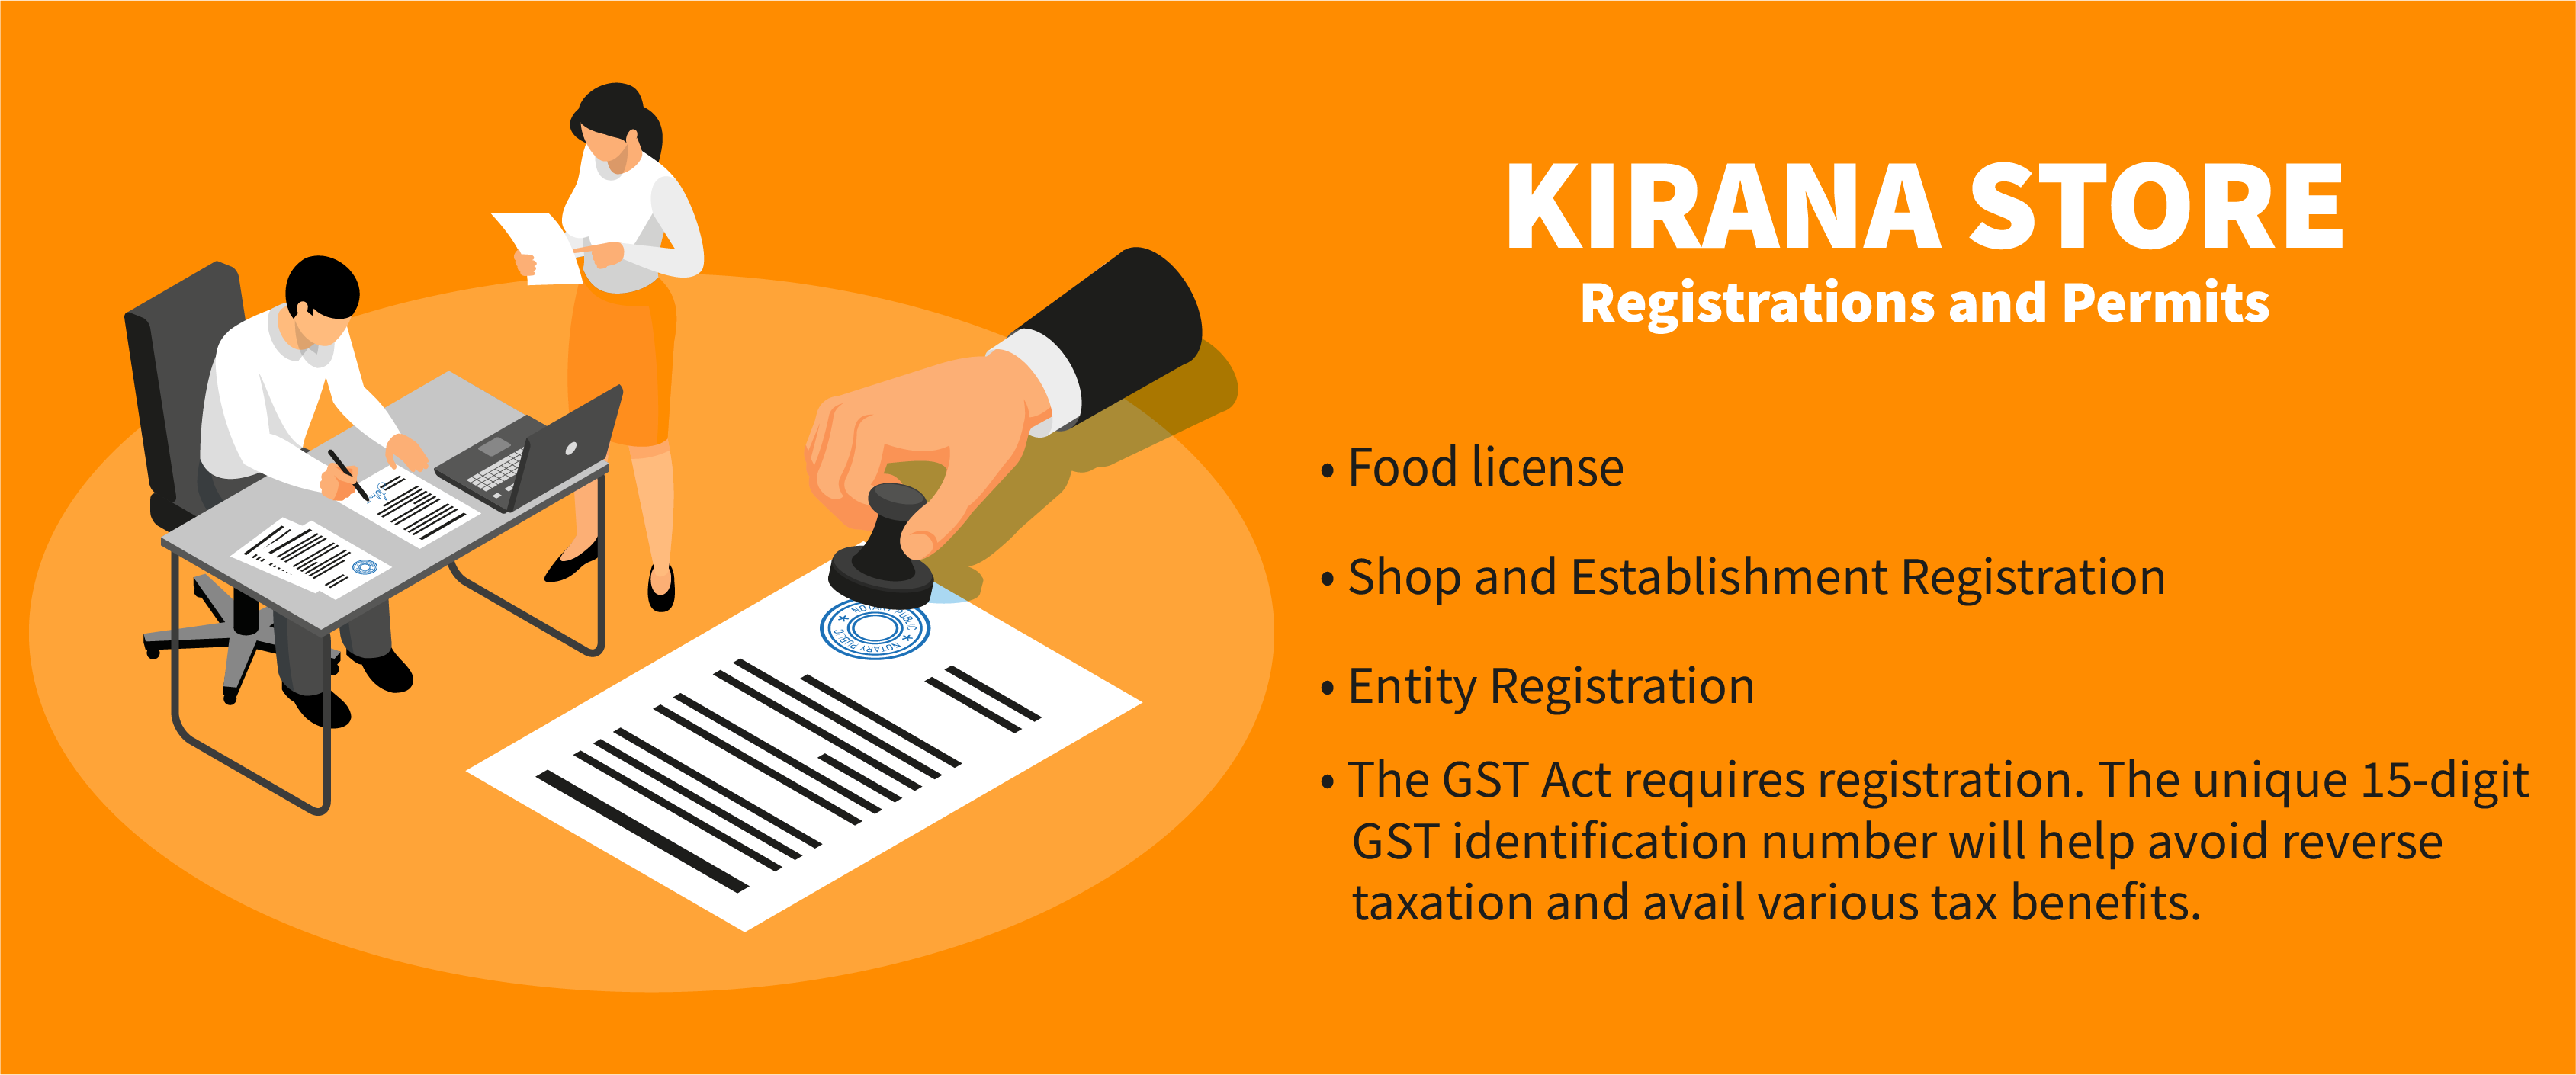 online kirana store business plan